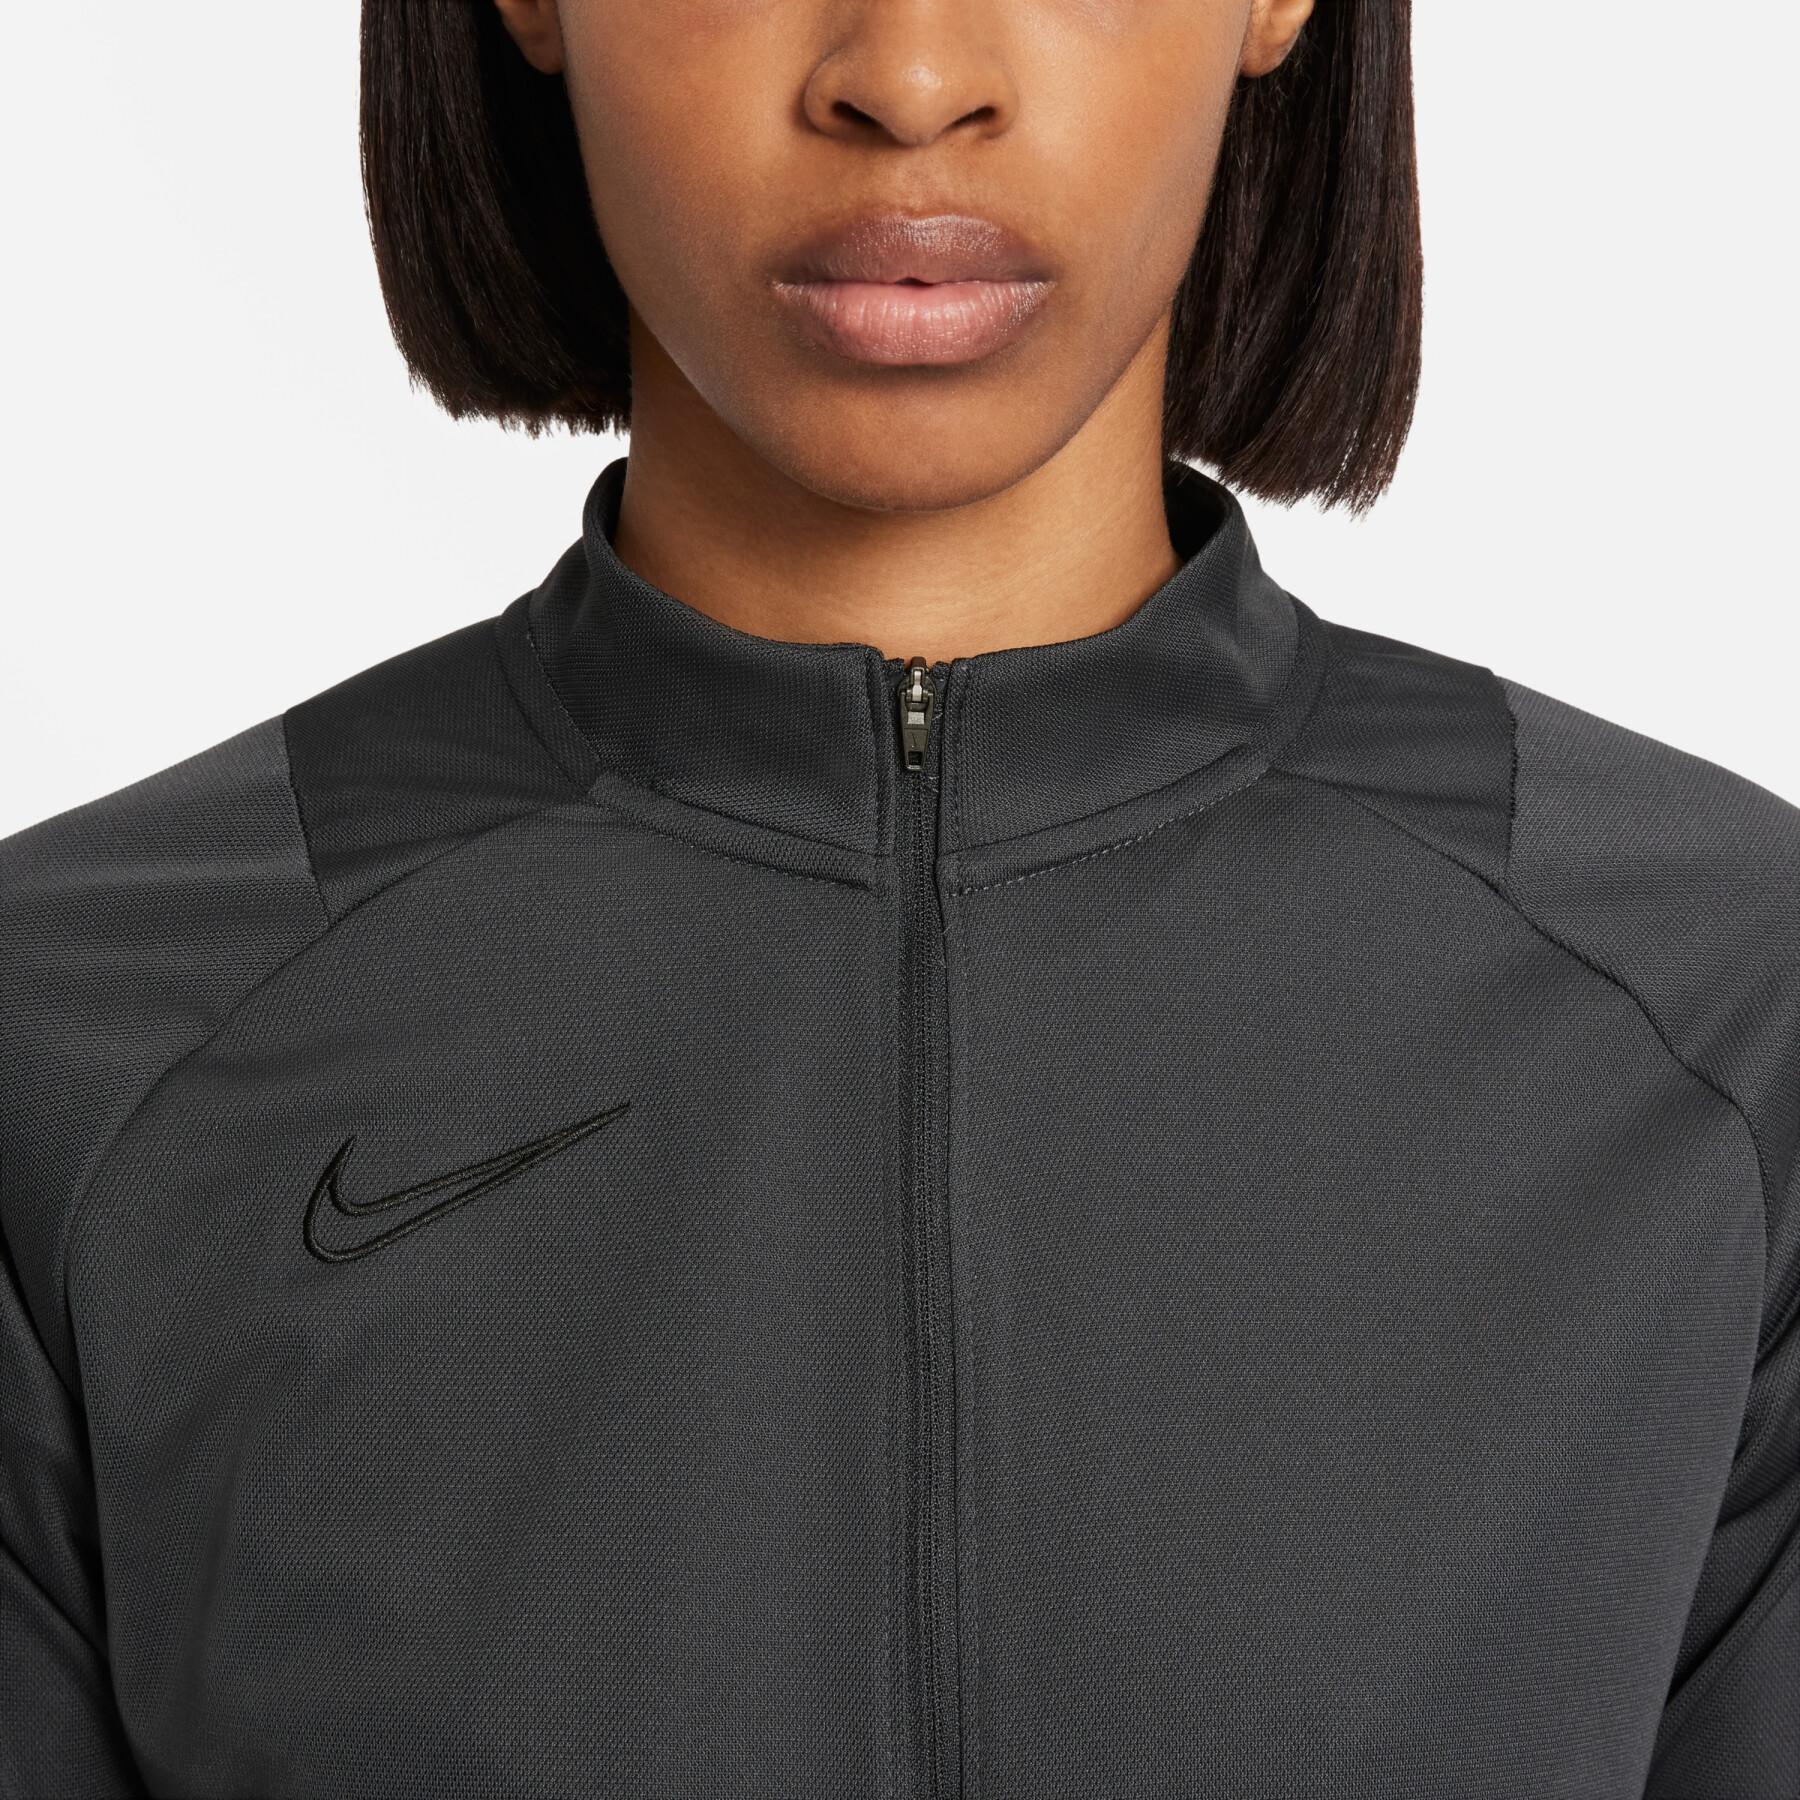 Träningsoverall för kvinnor Nike Dynamic Fit